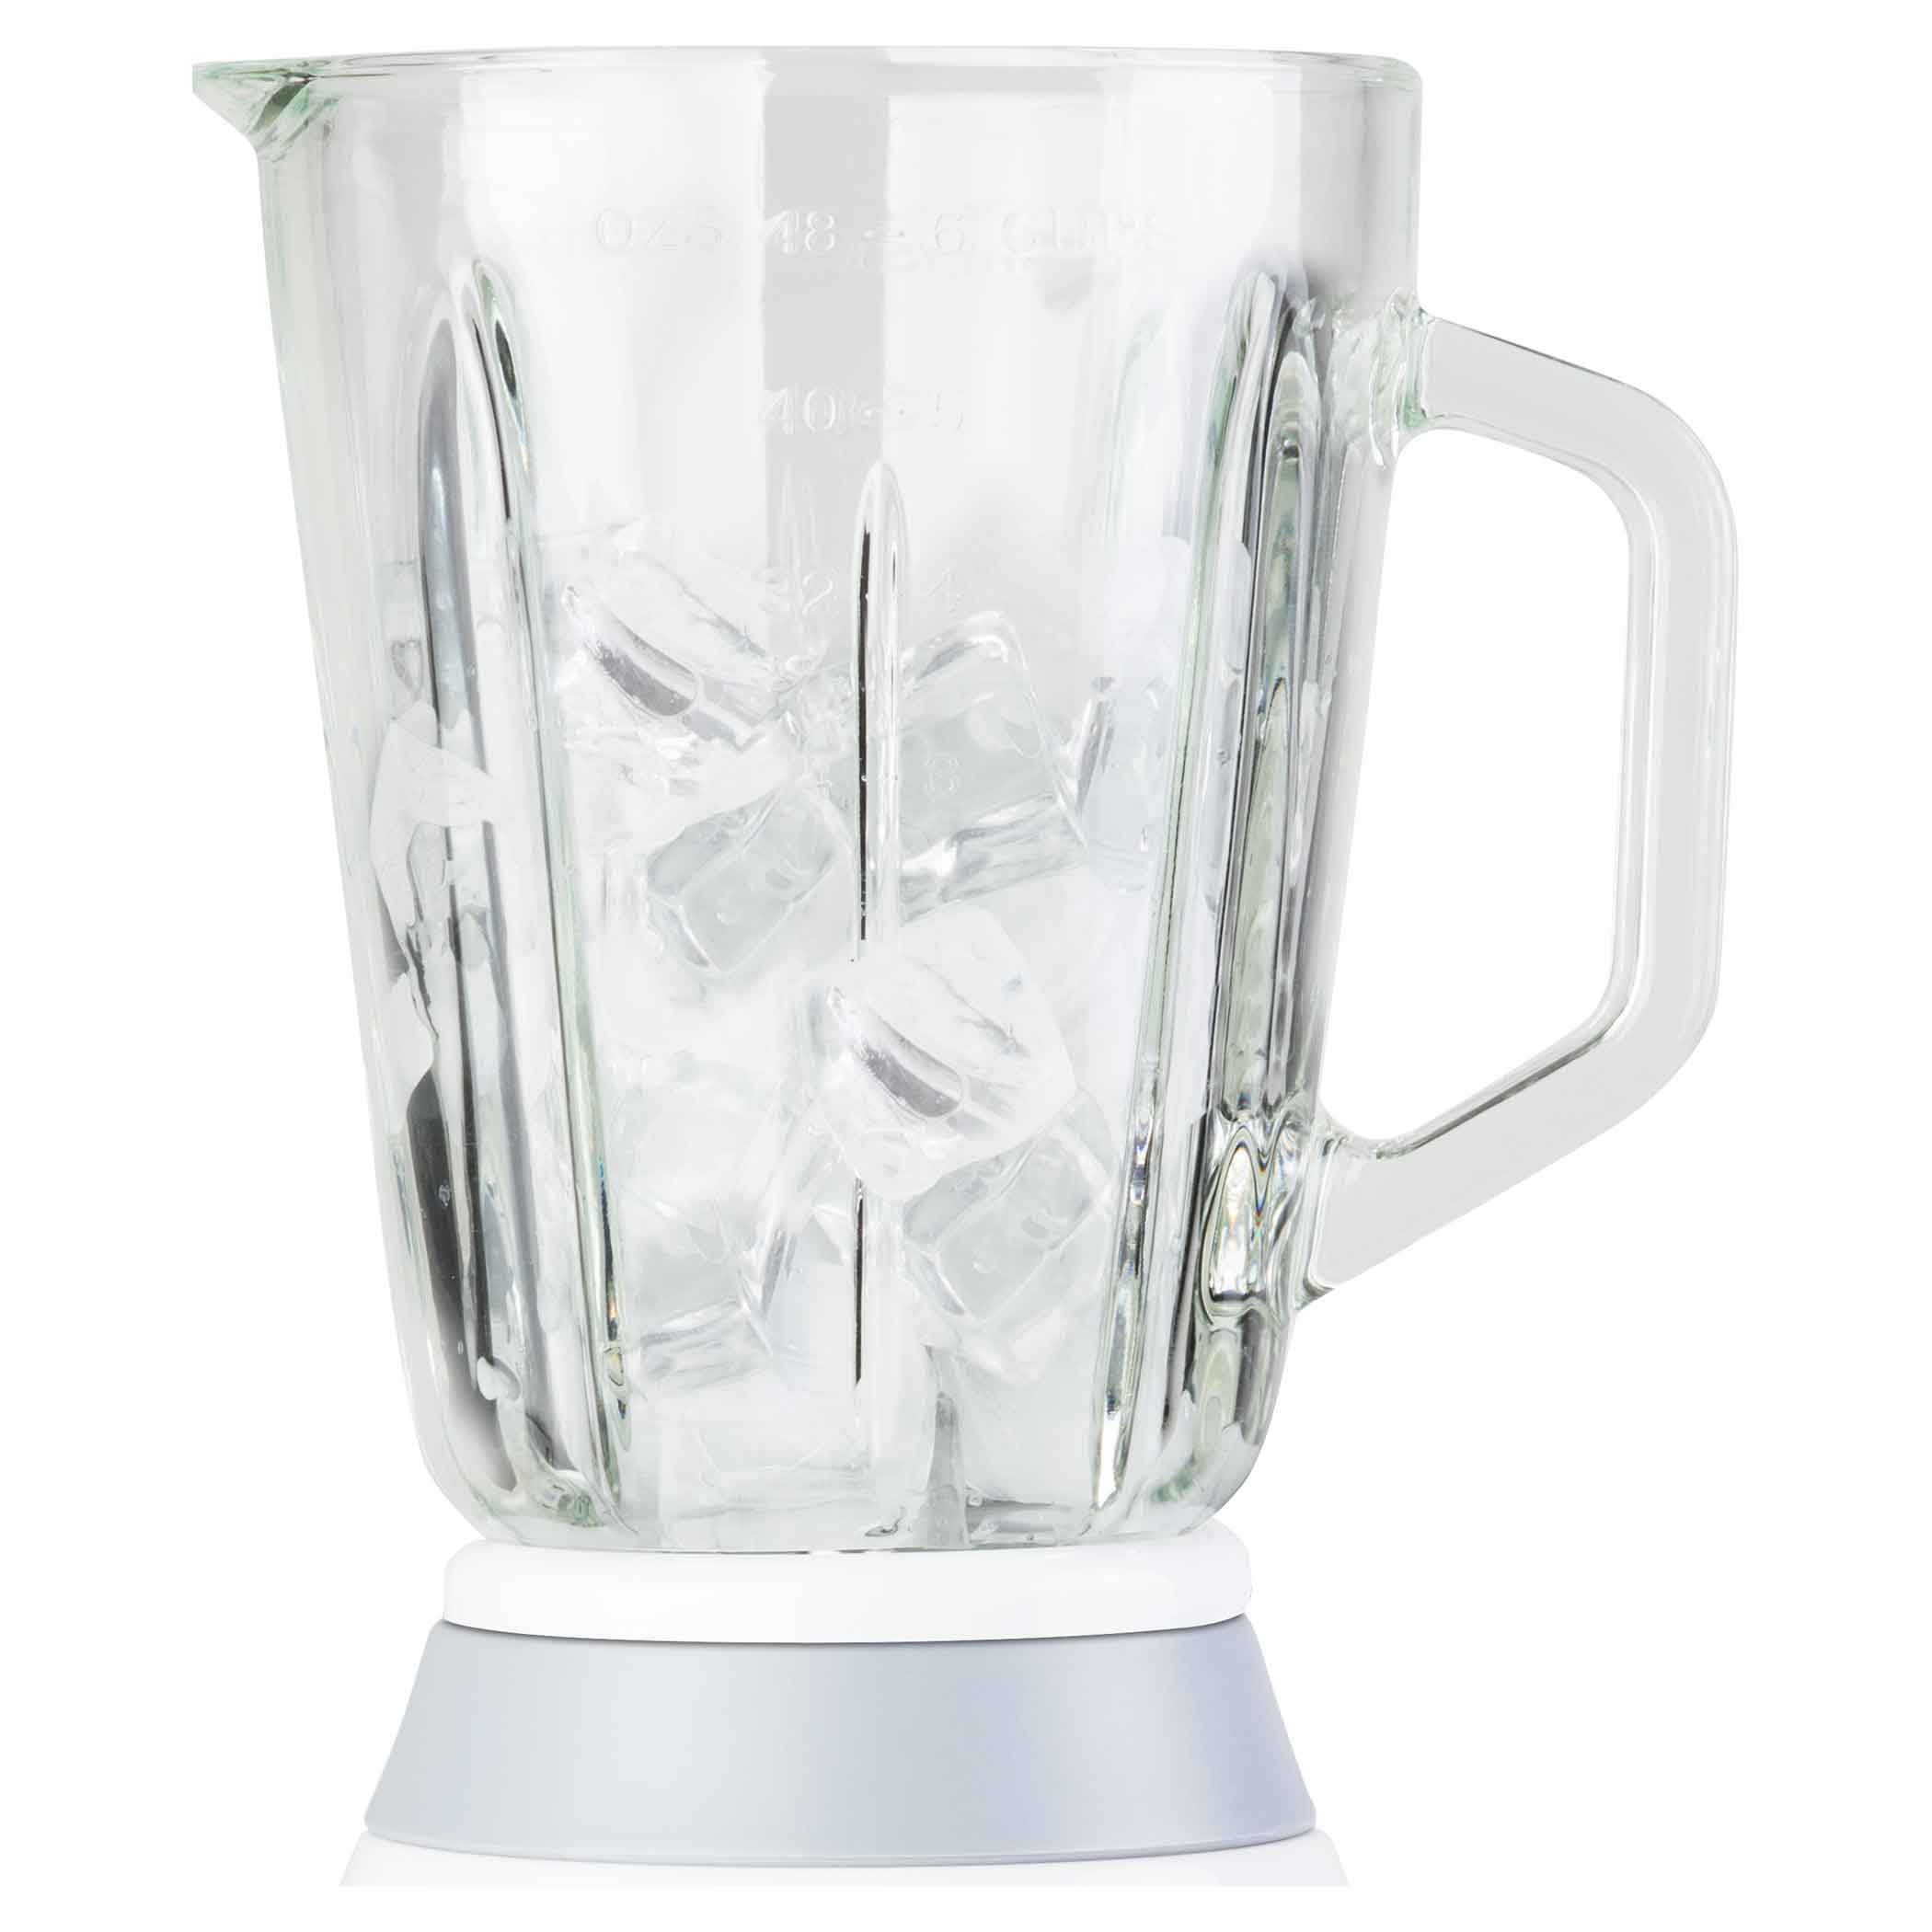 Sencor Blender 500 Watt Glass 1.5 Liter Capacity - White